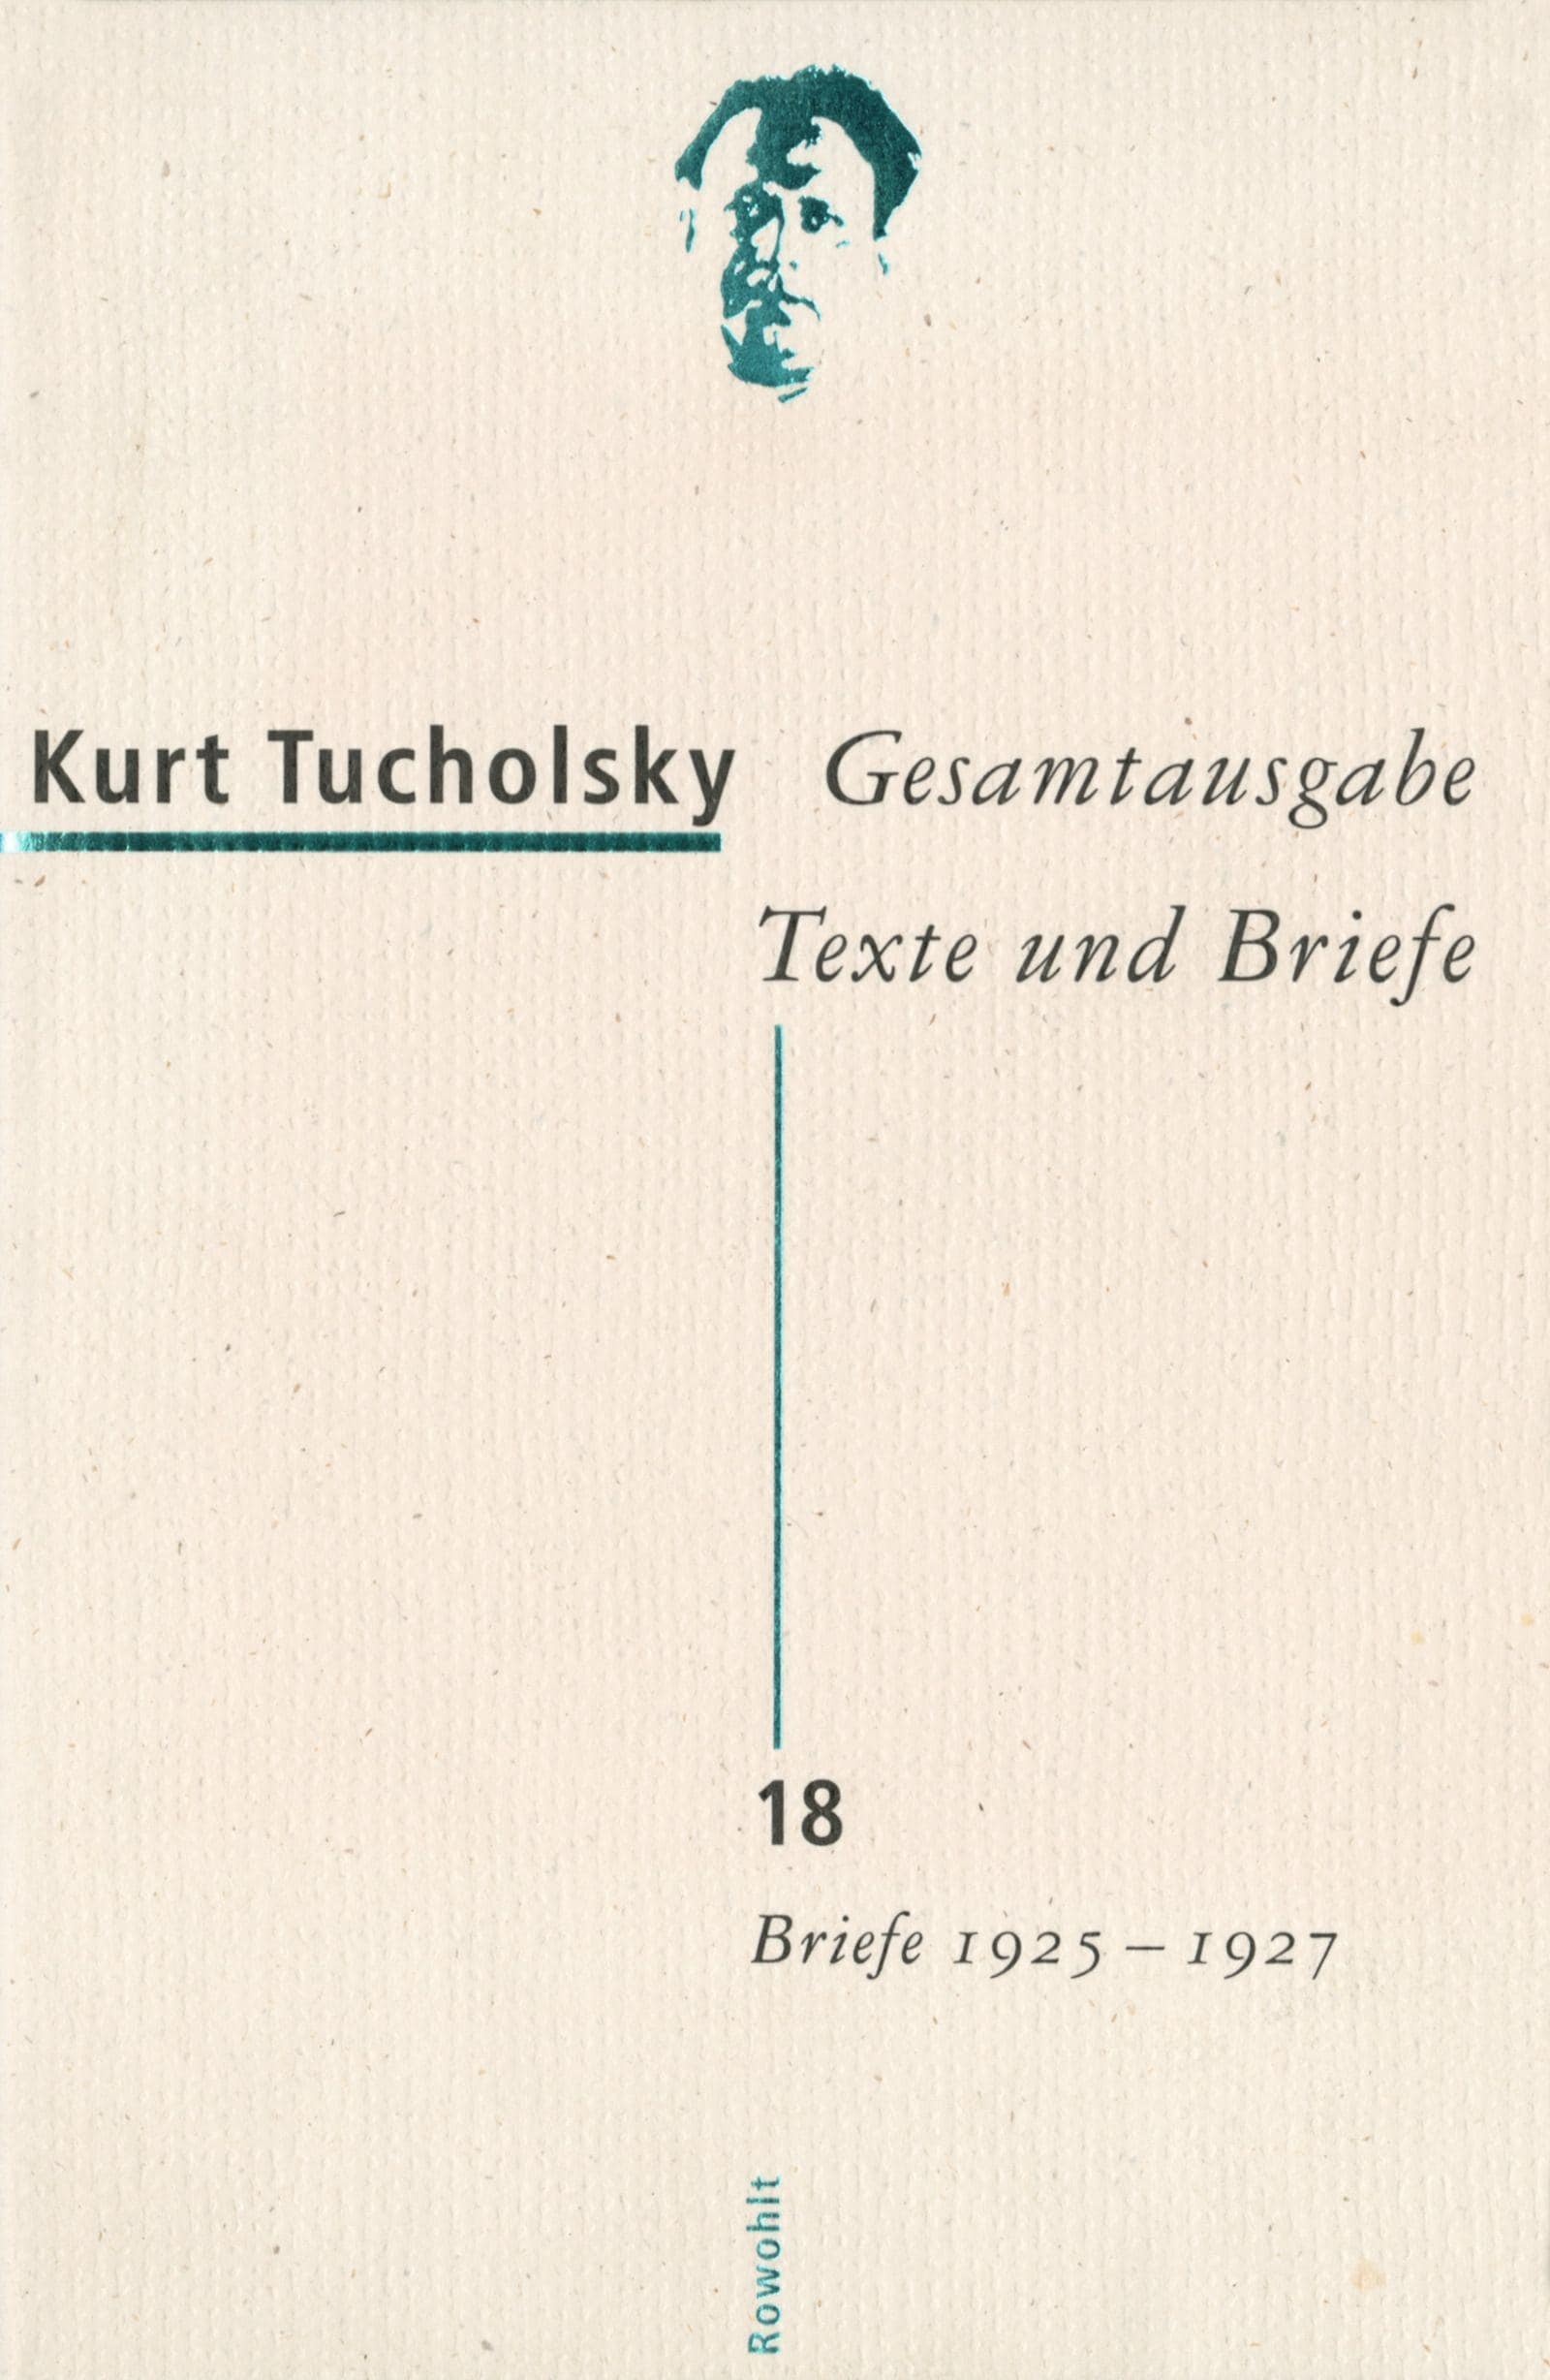 Gesamtausgabe 18. Briefe 1925-1927, Belletristik von Kurt Tucholsky